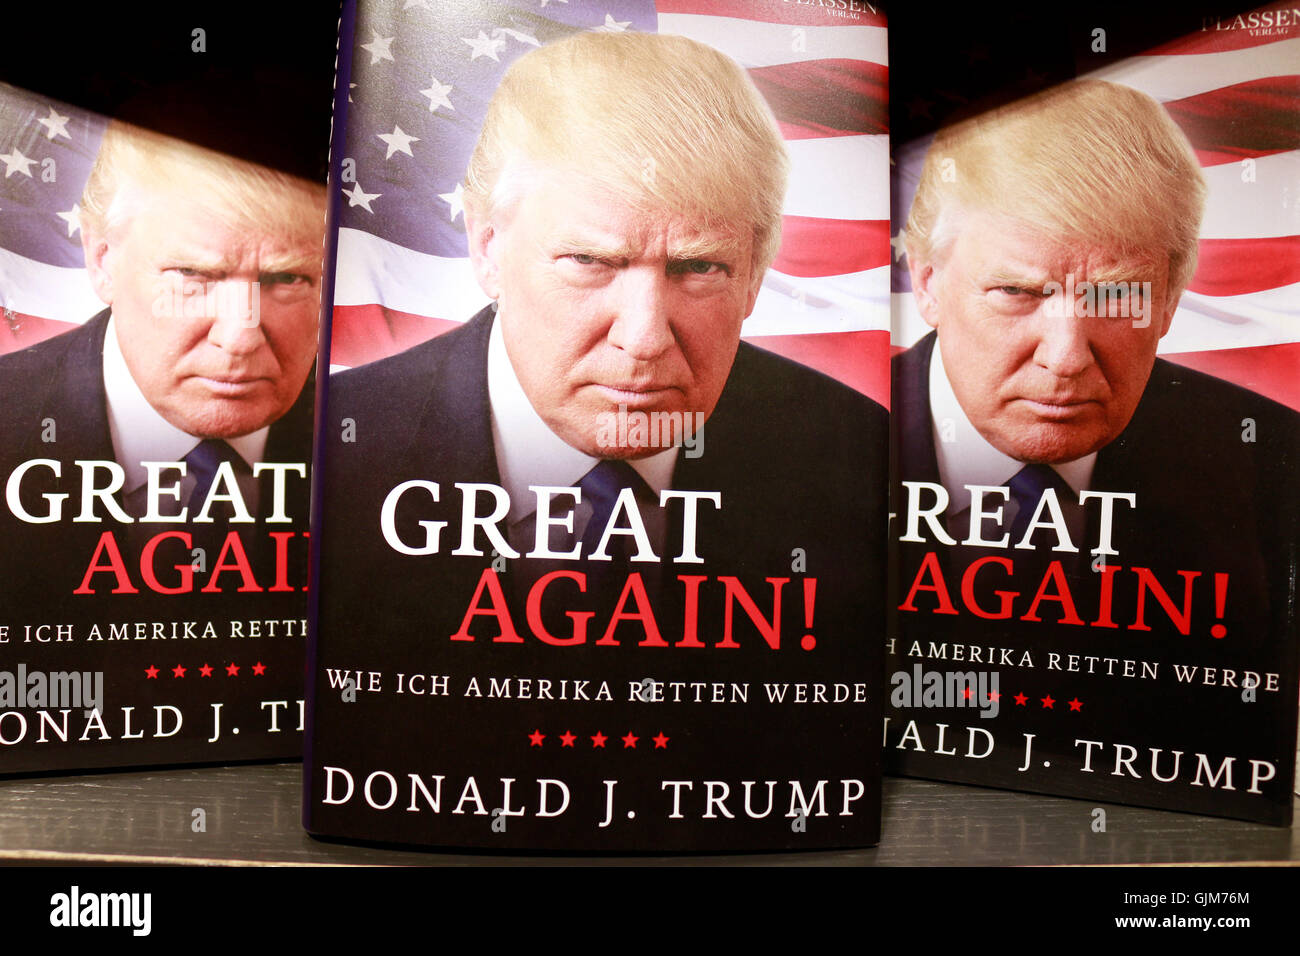 Donald Trump Auf Einem Buchcover - Symbolbild Zum Praesidentschaftswahlkampf in Den USA, Berlin. Stockfoto